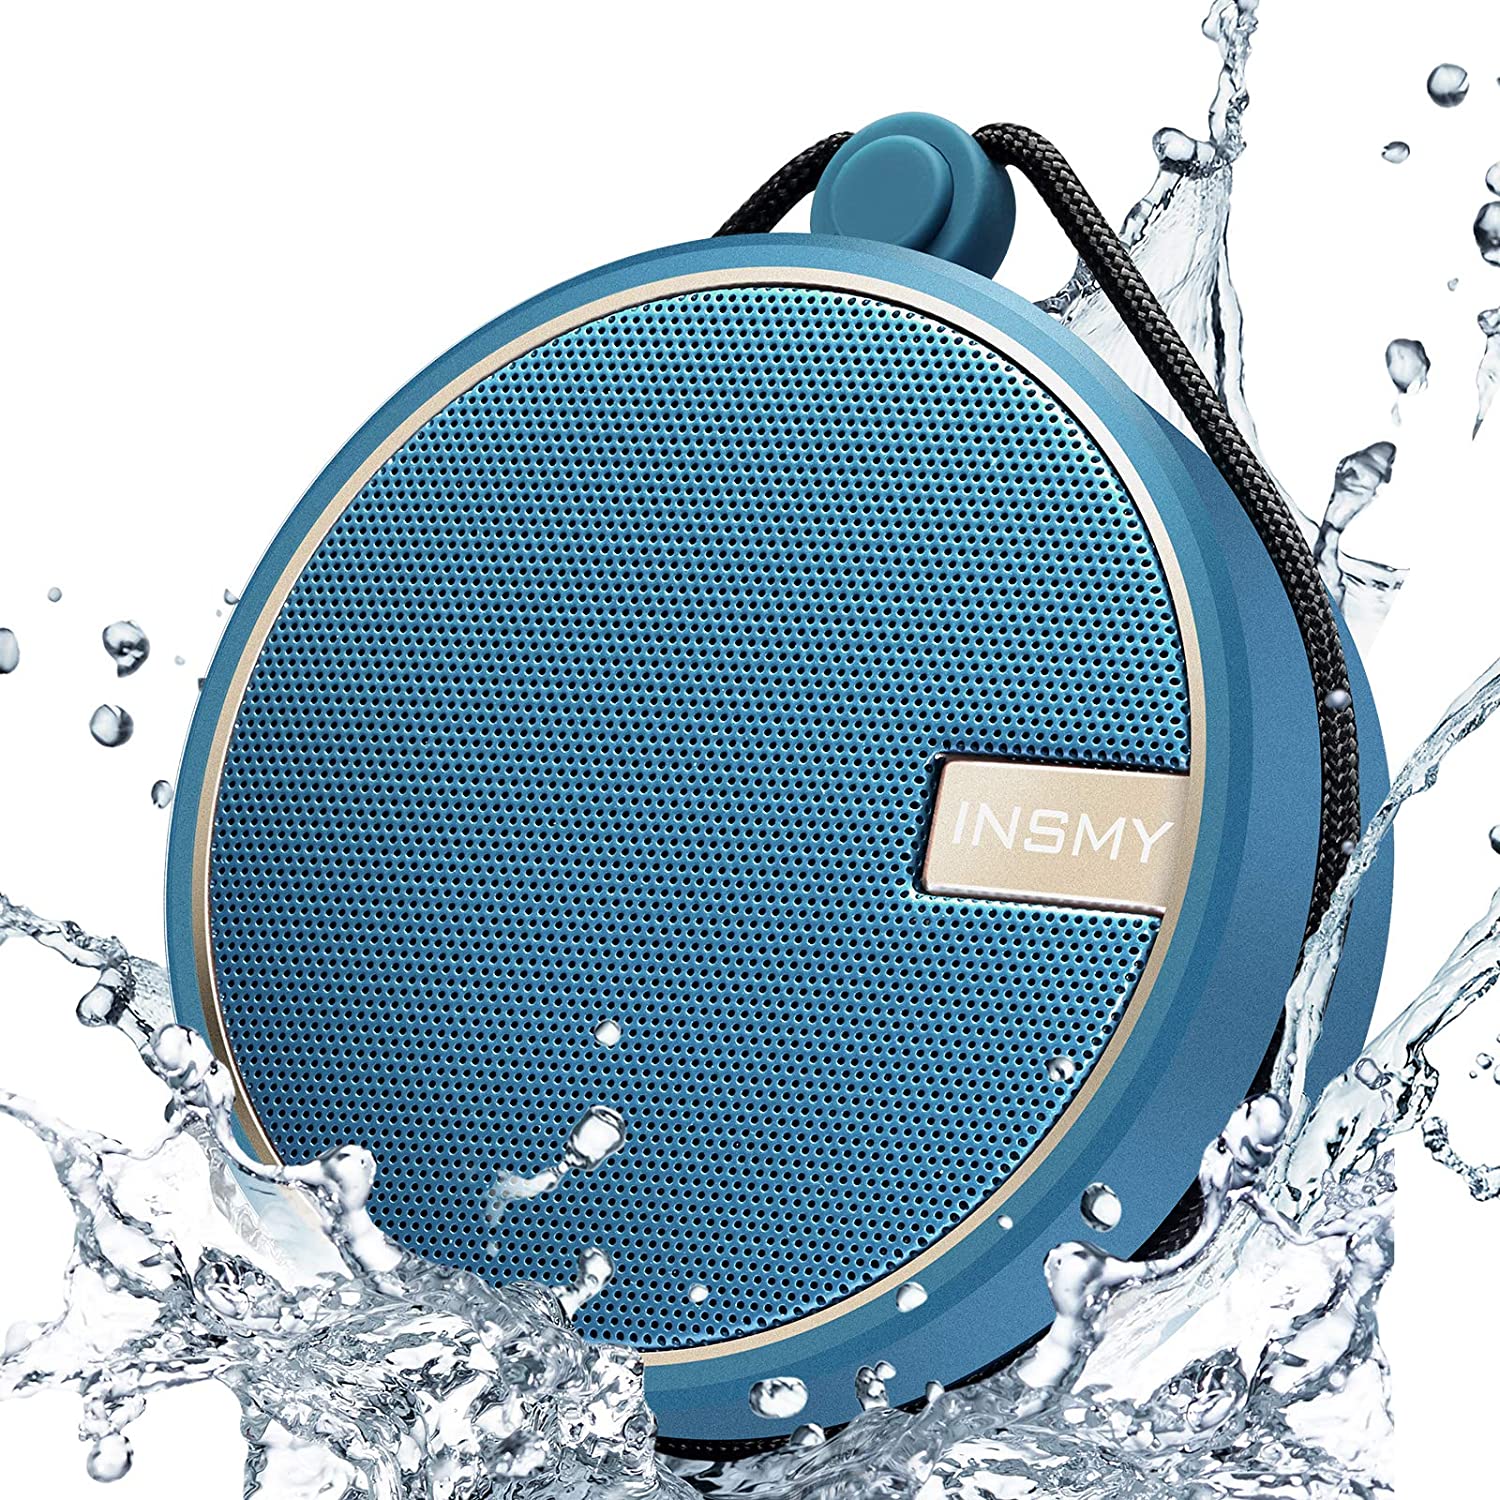 INSMY Portable IPX7 Waterproof Bluetooth Speaker, Wireless Outdoor Spe